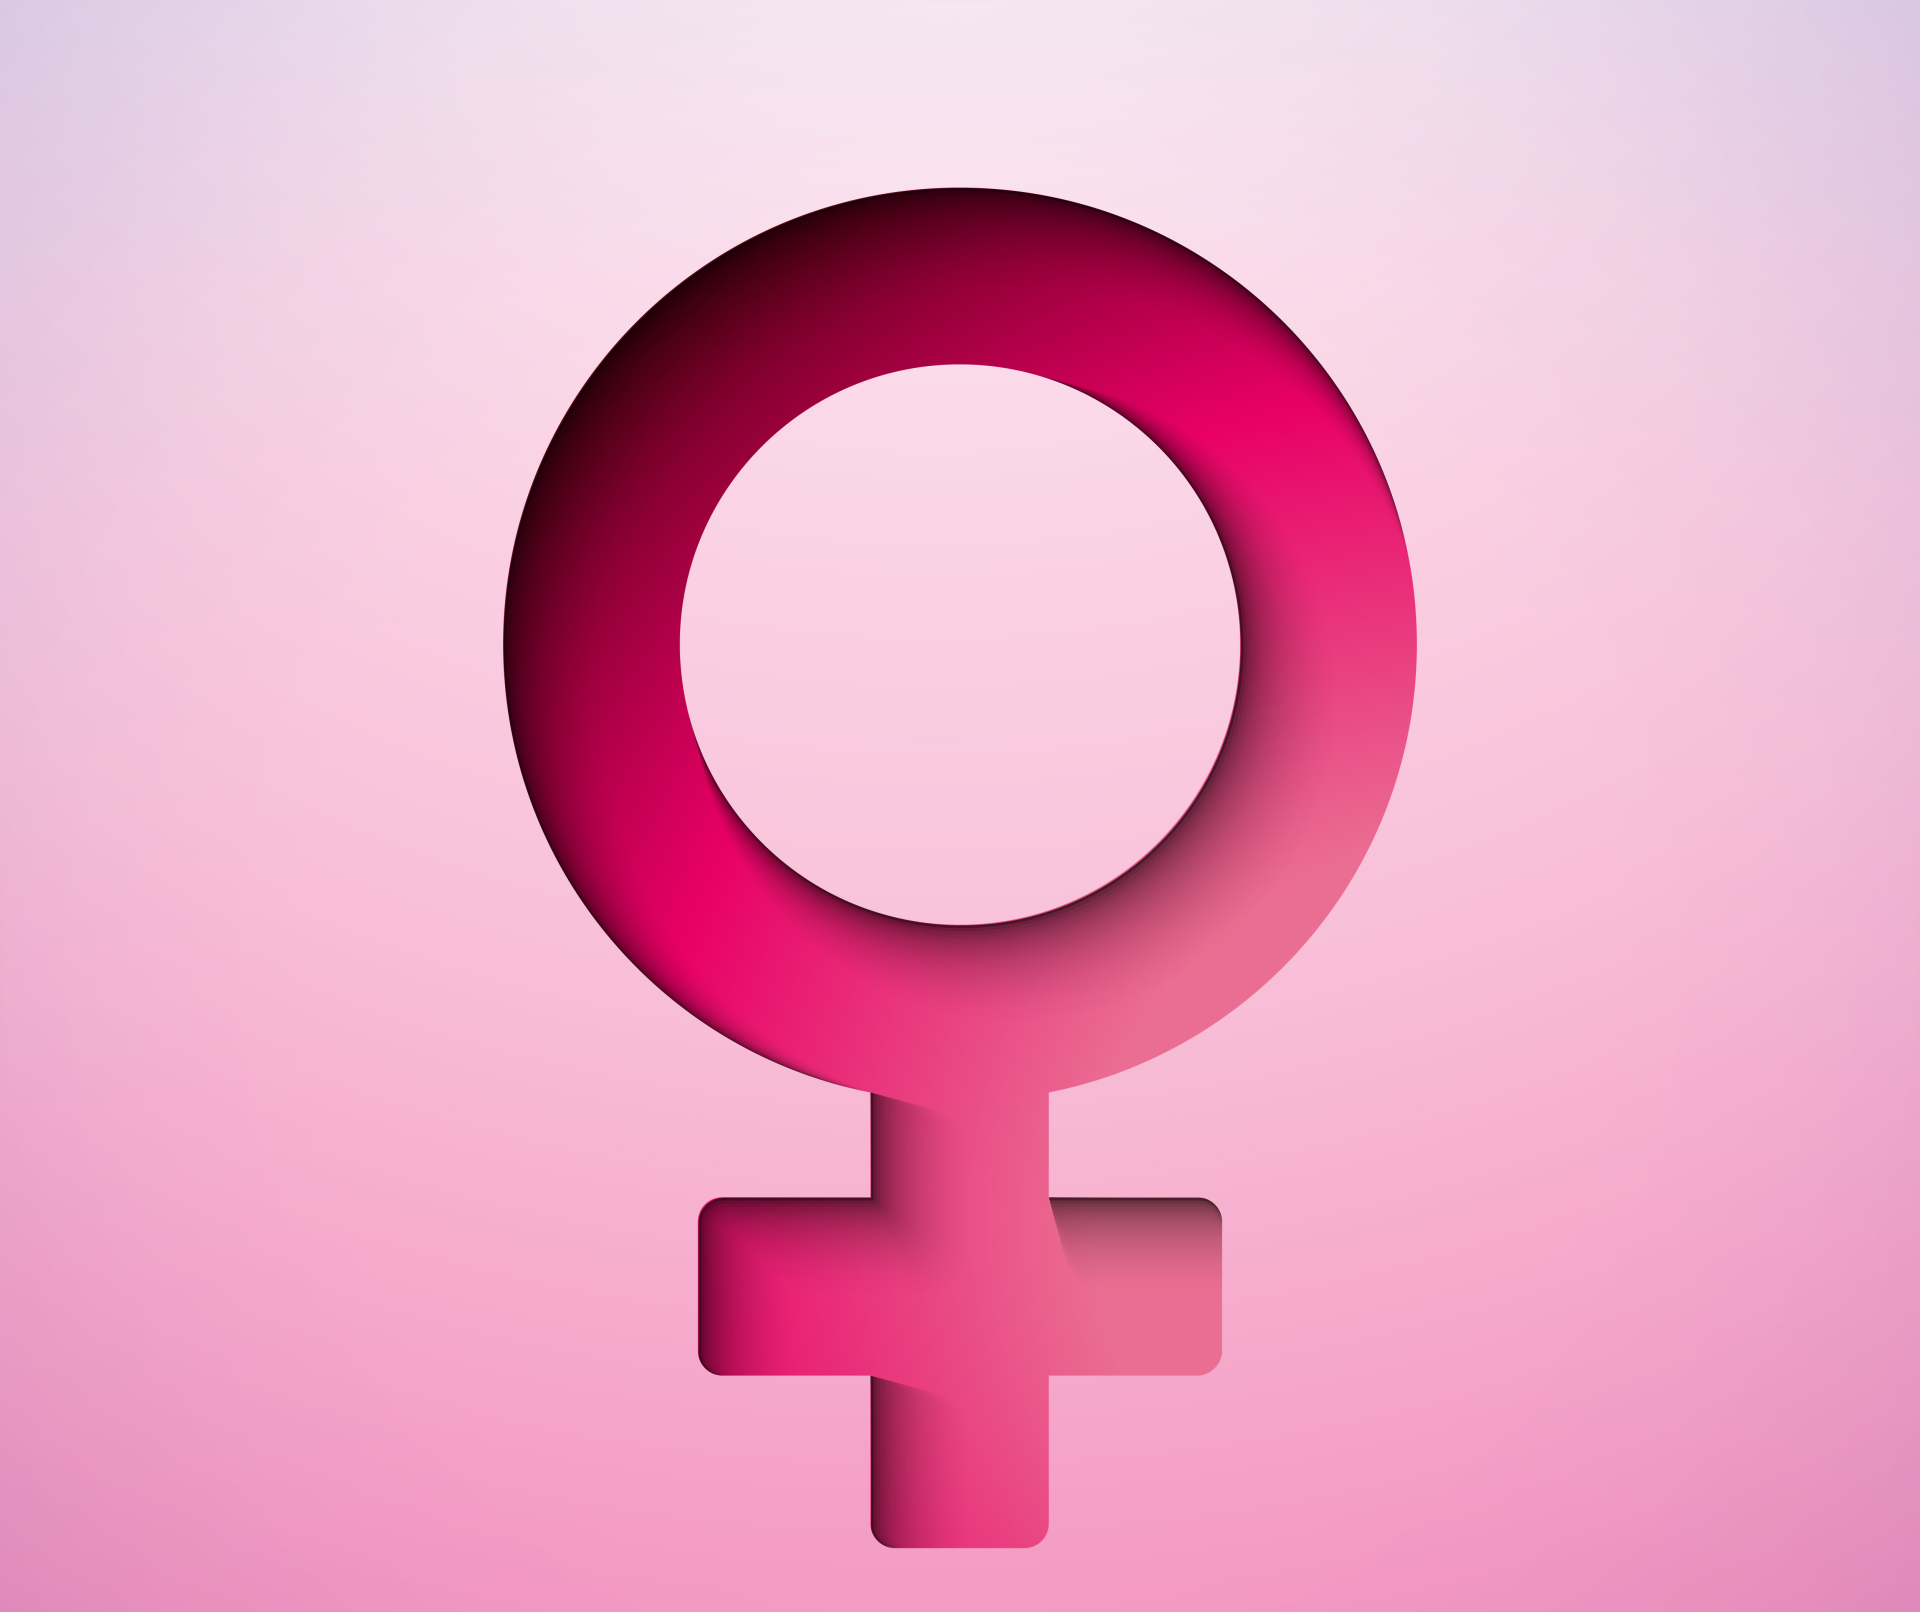 símbolo do género feminino